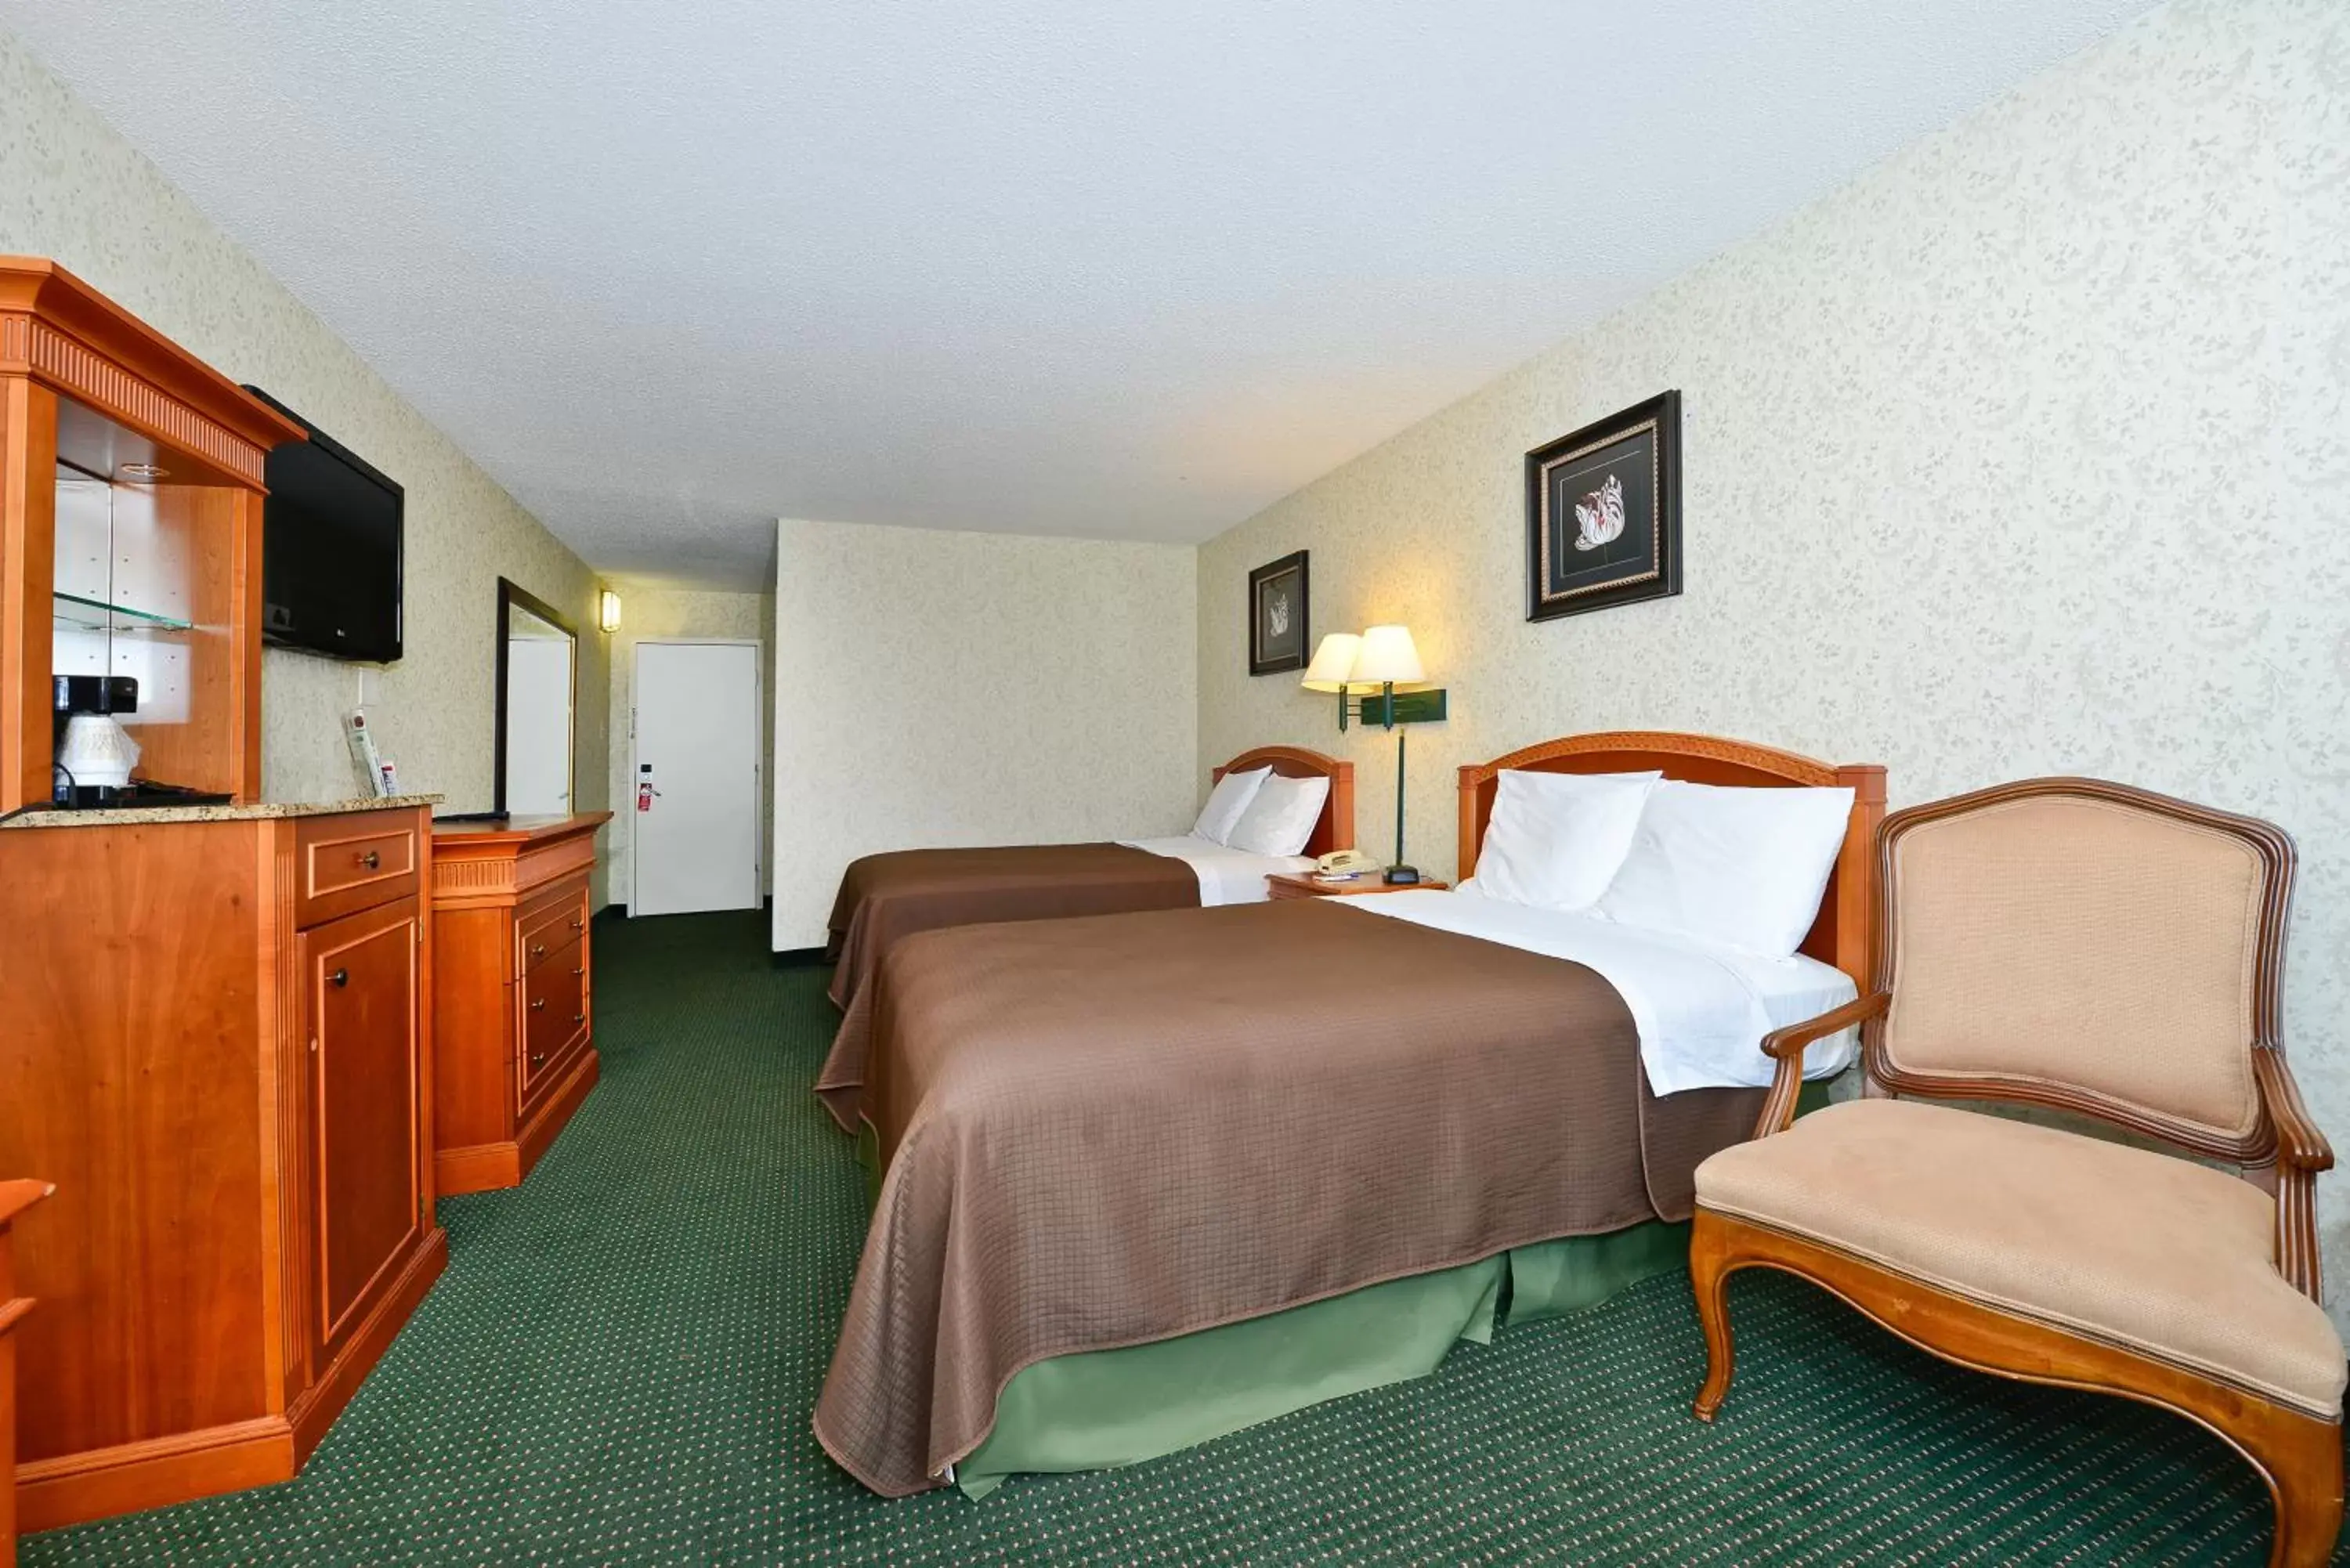 Bedroom, Bed in Americas Best Value Inn - Baltimore